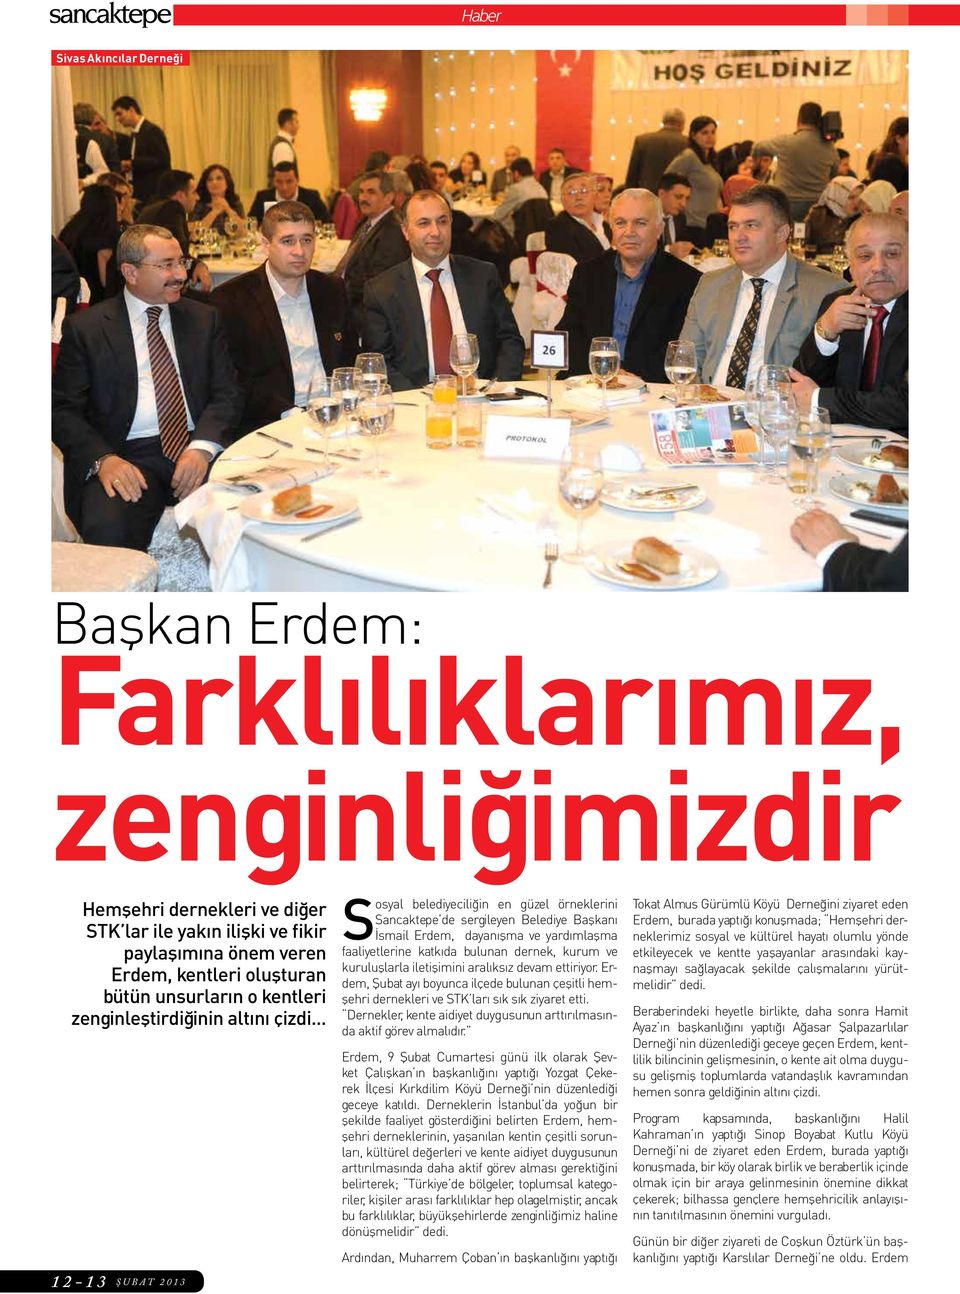 .. 12-13 ŞUBAT 2013 Sosyal belediyeciliğin en güzel örneklerini Sancaktepe de sergileyen Belediye Başkanı İsmail Erdem, dayanışma ve yardımlaşma faaliyetlerine katkıda bulunan dernek, kurum ve